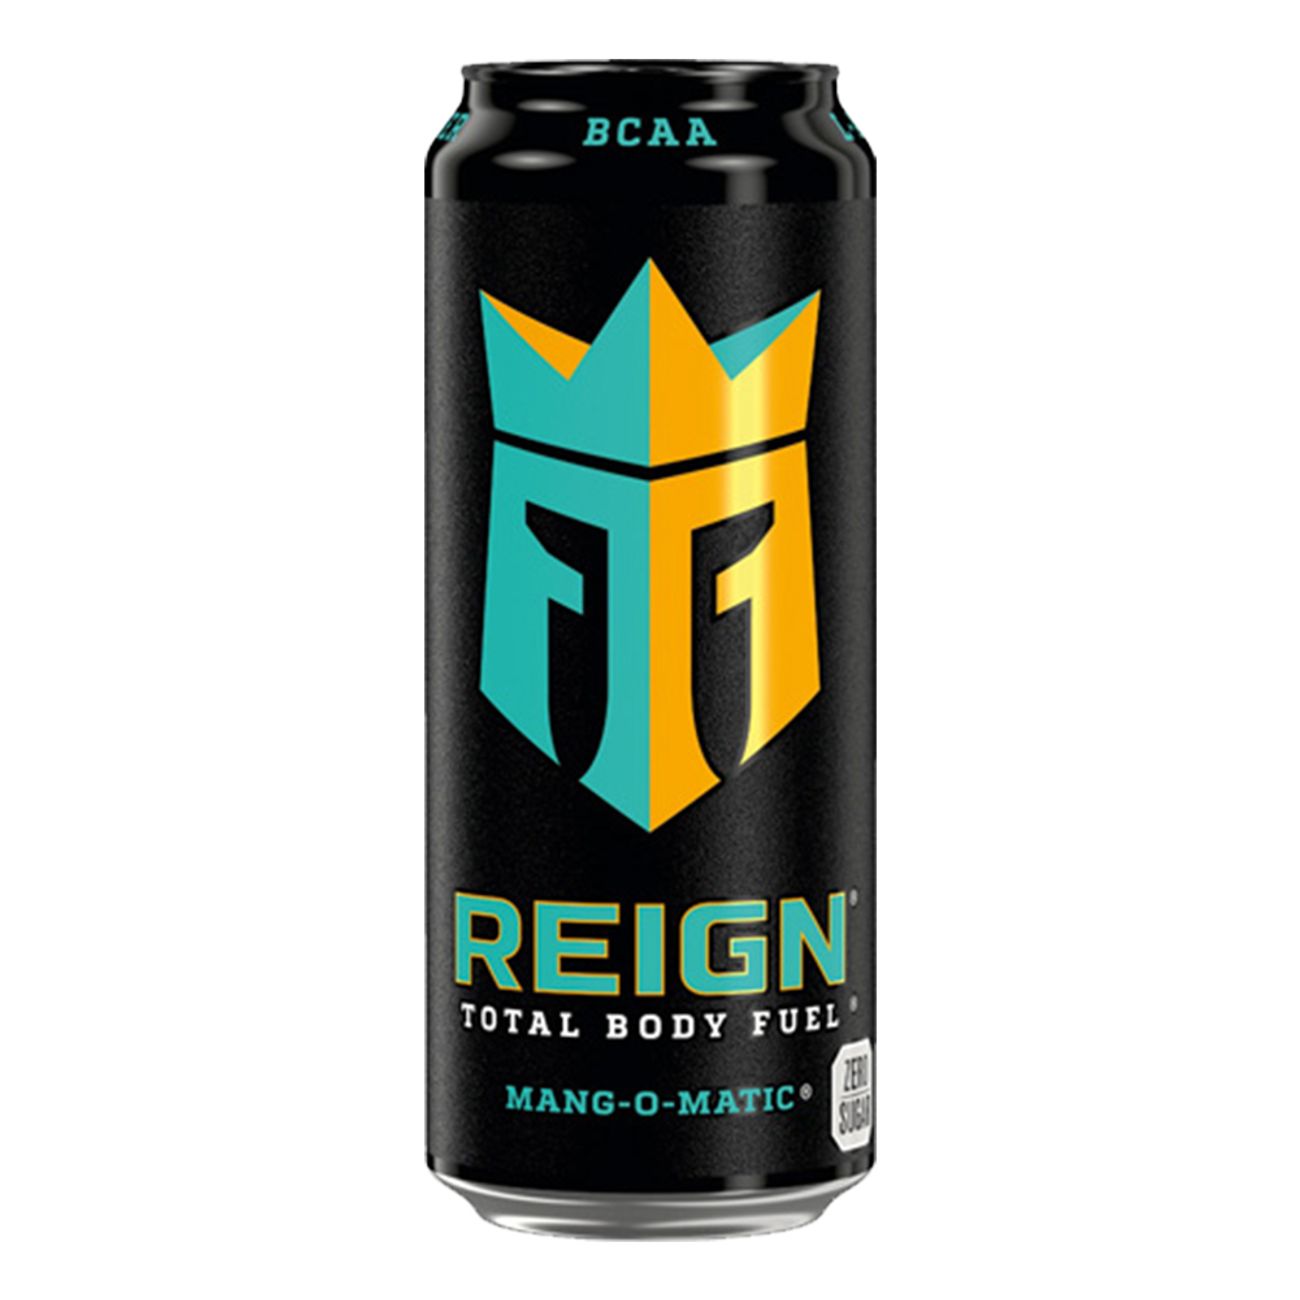 reign-mang-o-matic-energidryck-92493-1